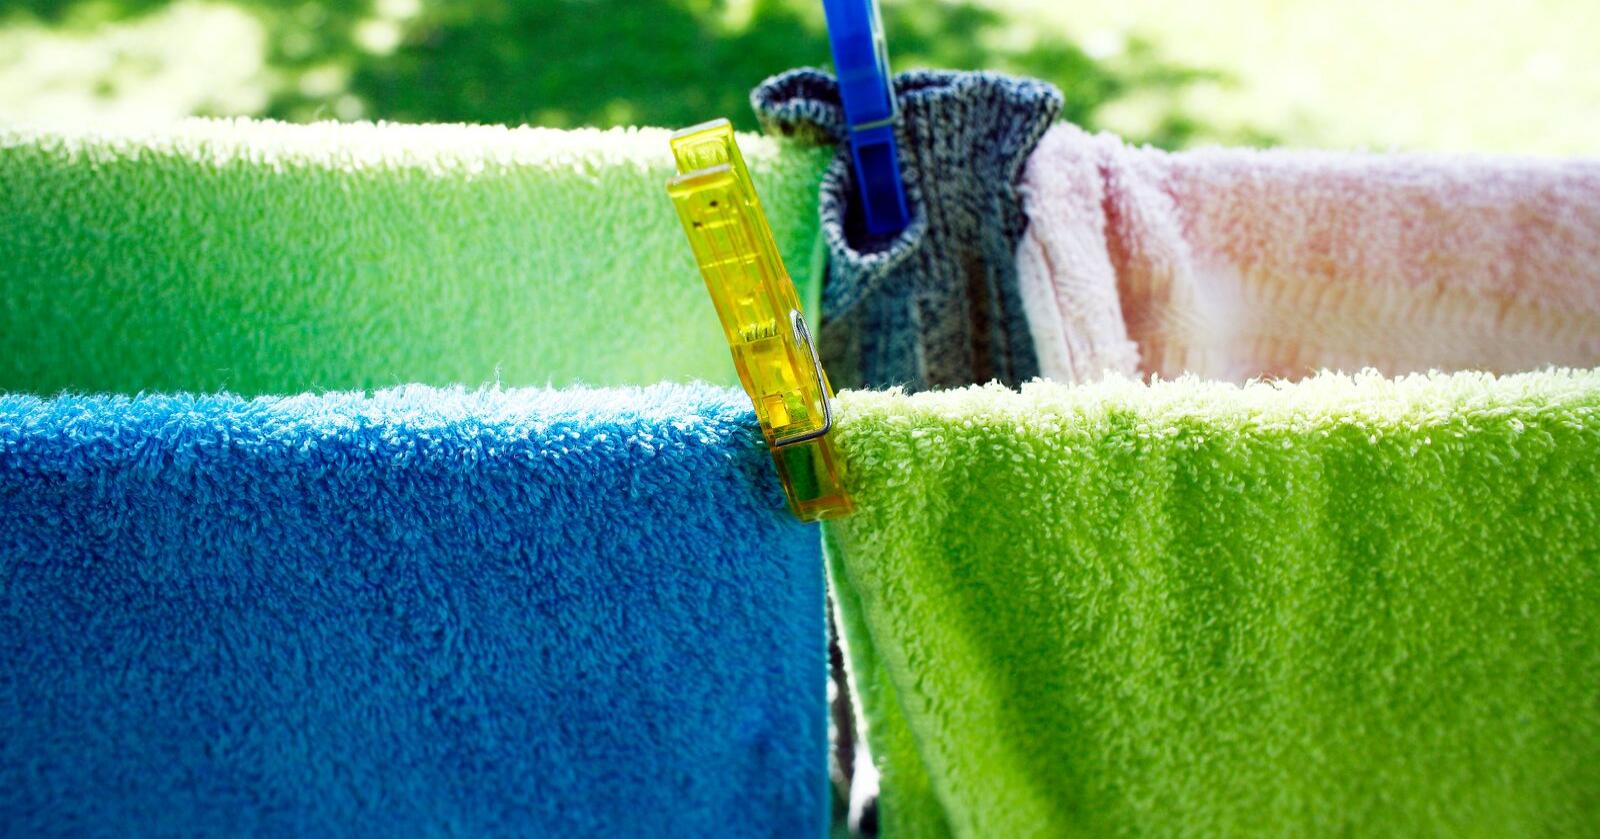 Å vaske klede på natta viser ikkje nemneverdig att på straumrekninga. Foto: Sara Johannessen Meek / NTB / NPK